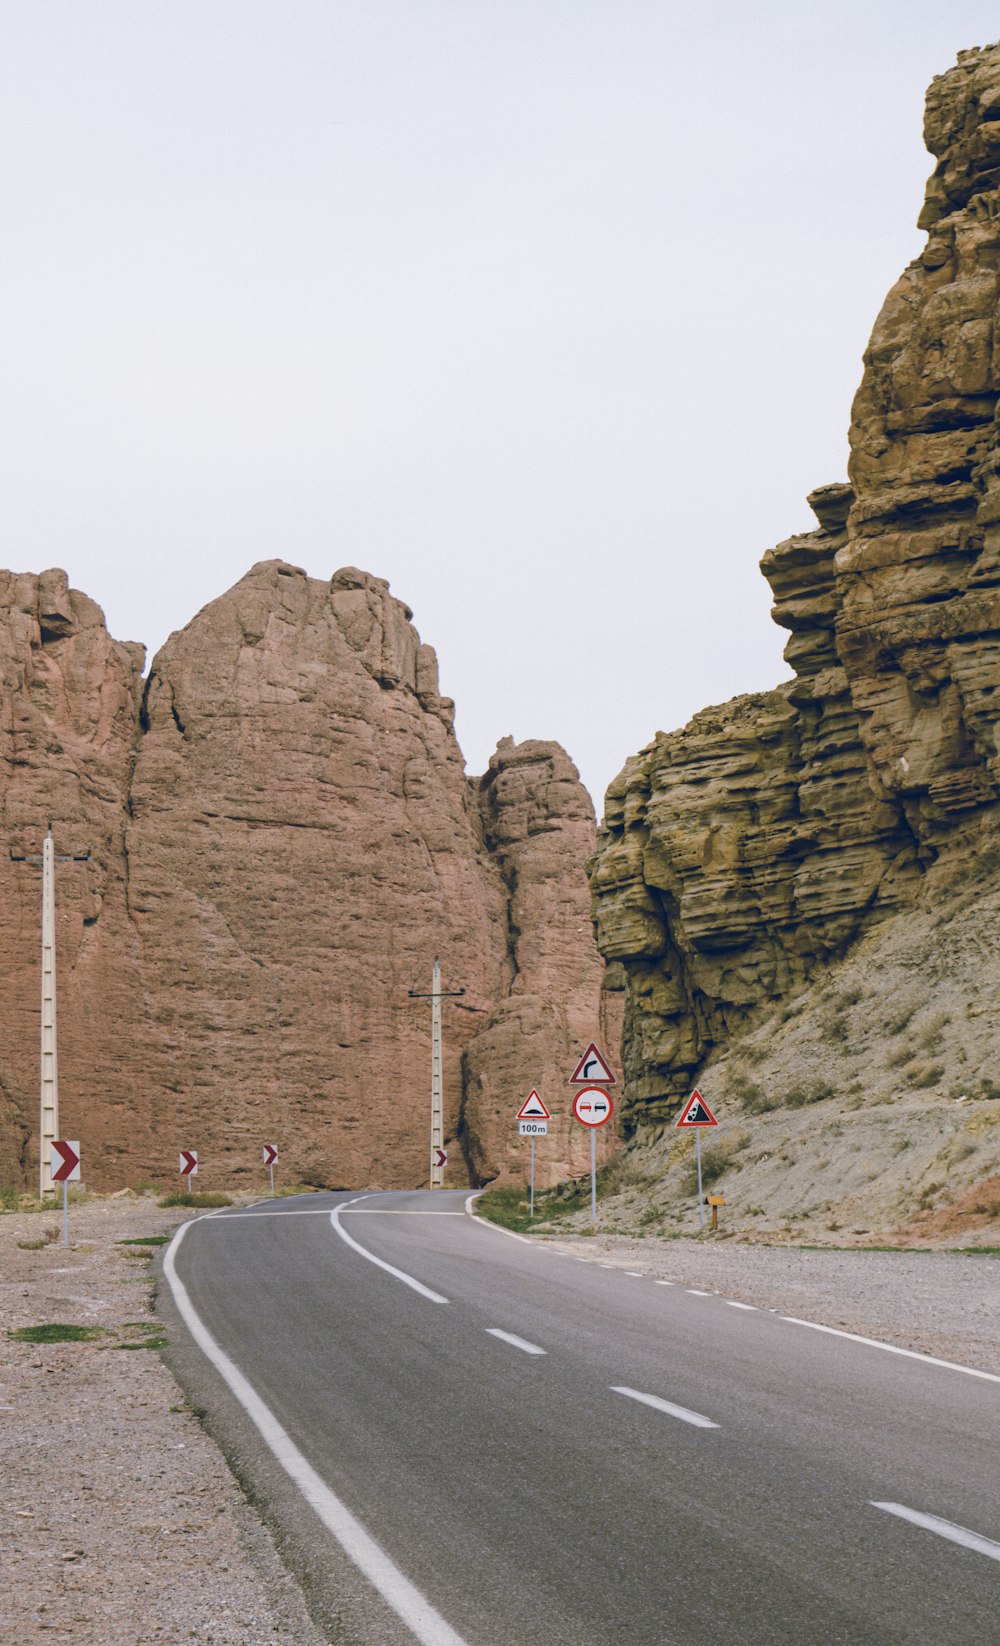 Eine leere Straße mitten in der Wüste